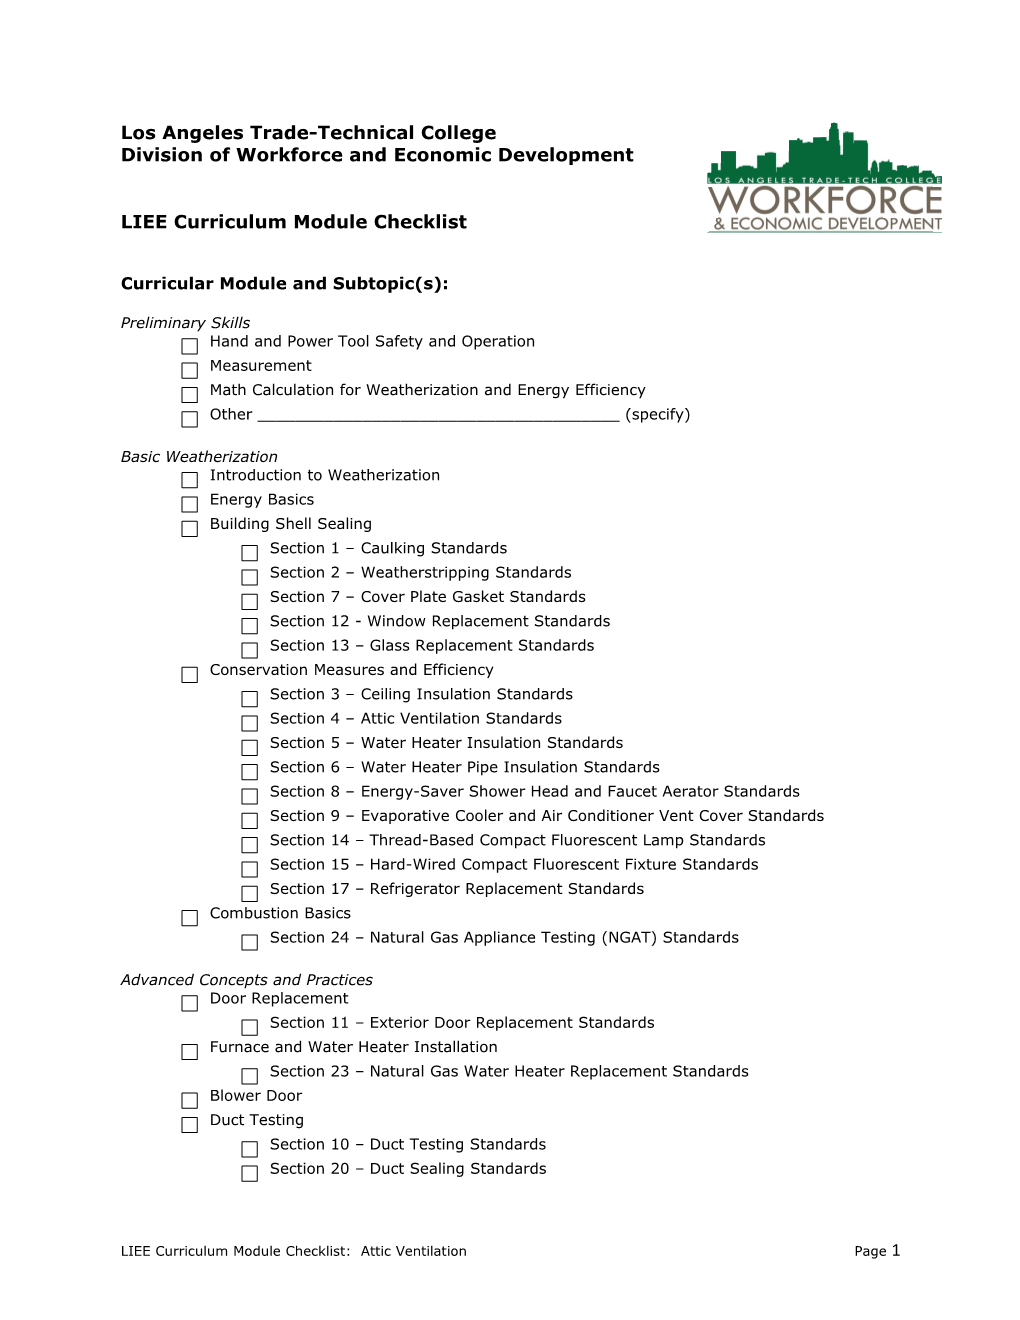 LIEE Curriculum Module Checklist